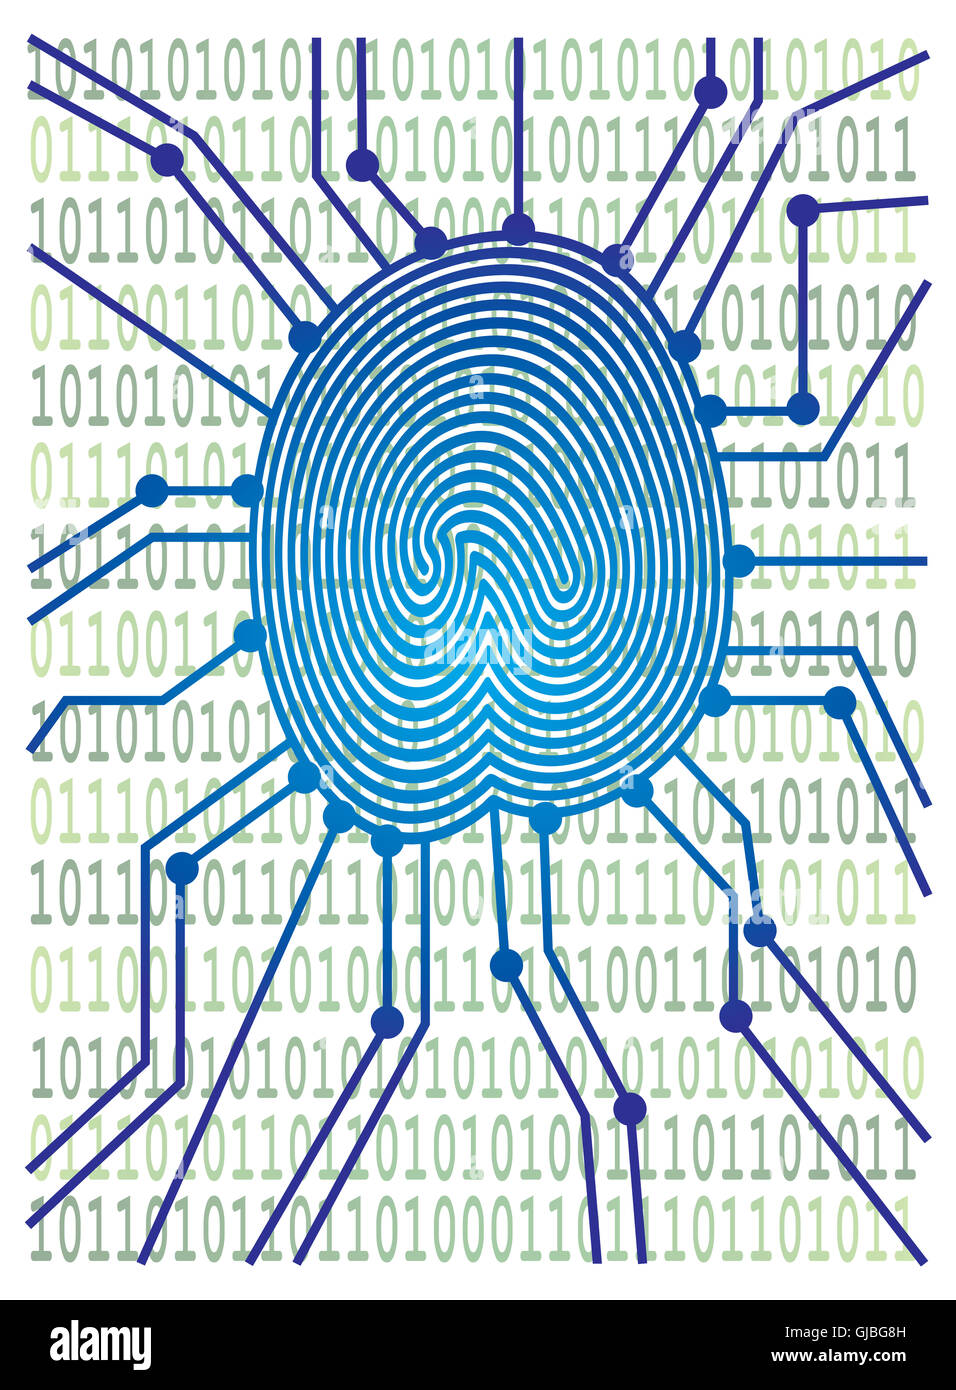 Placa de circuito con huella digital equipo código binario para la identificación de autenticación ilustración en color Foto de stock